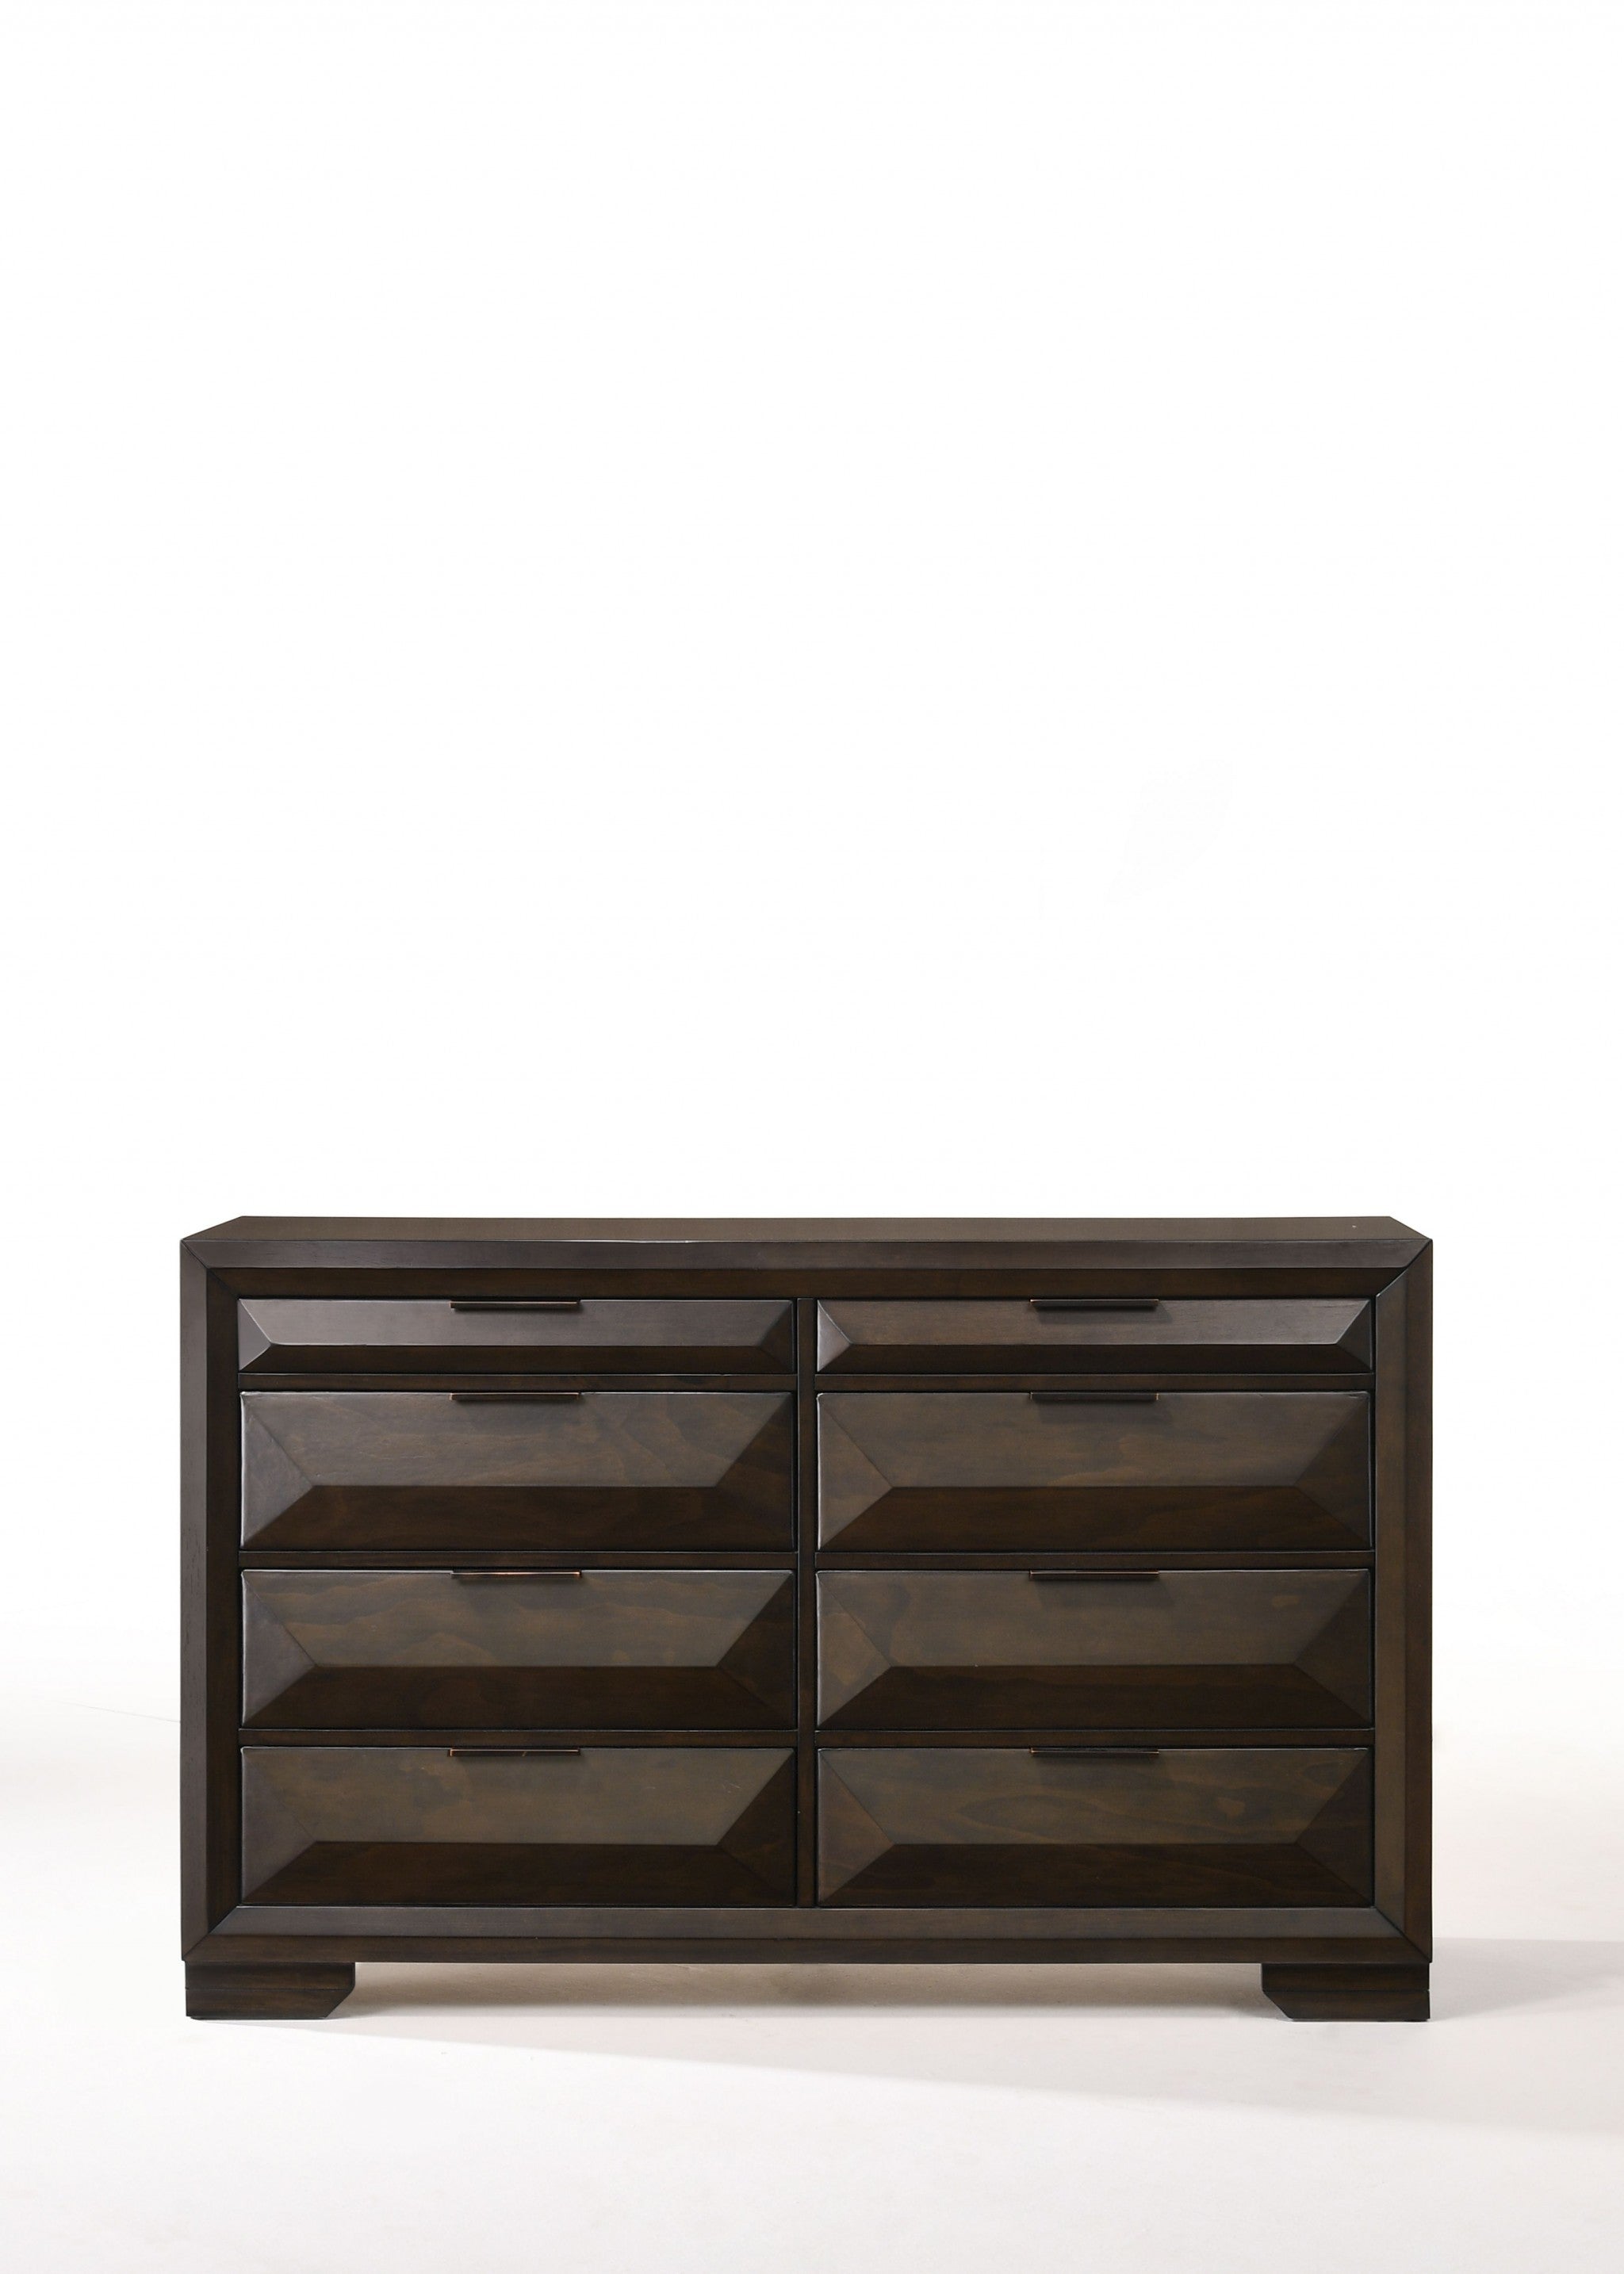 59" Espresso Solid Wood Standard Dresser/Chest